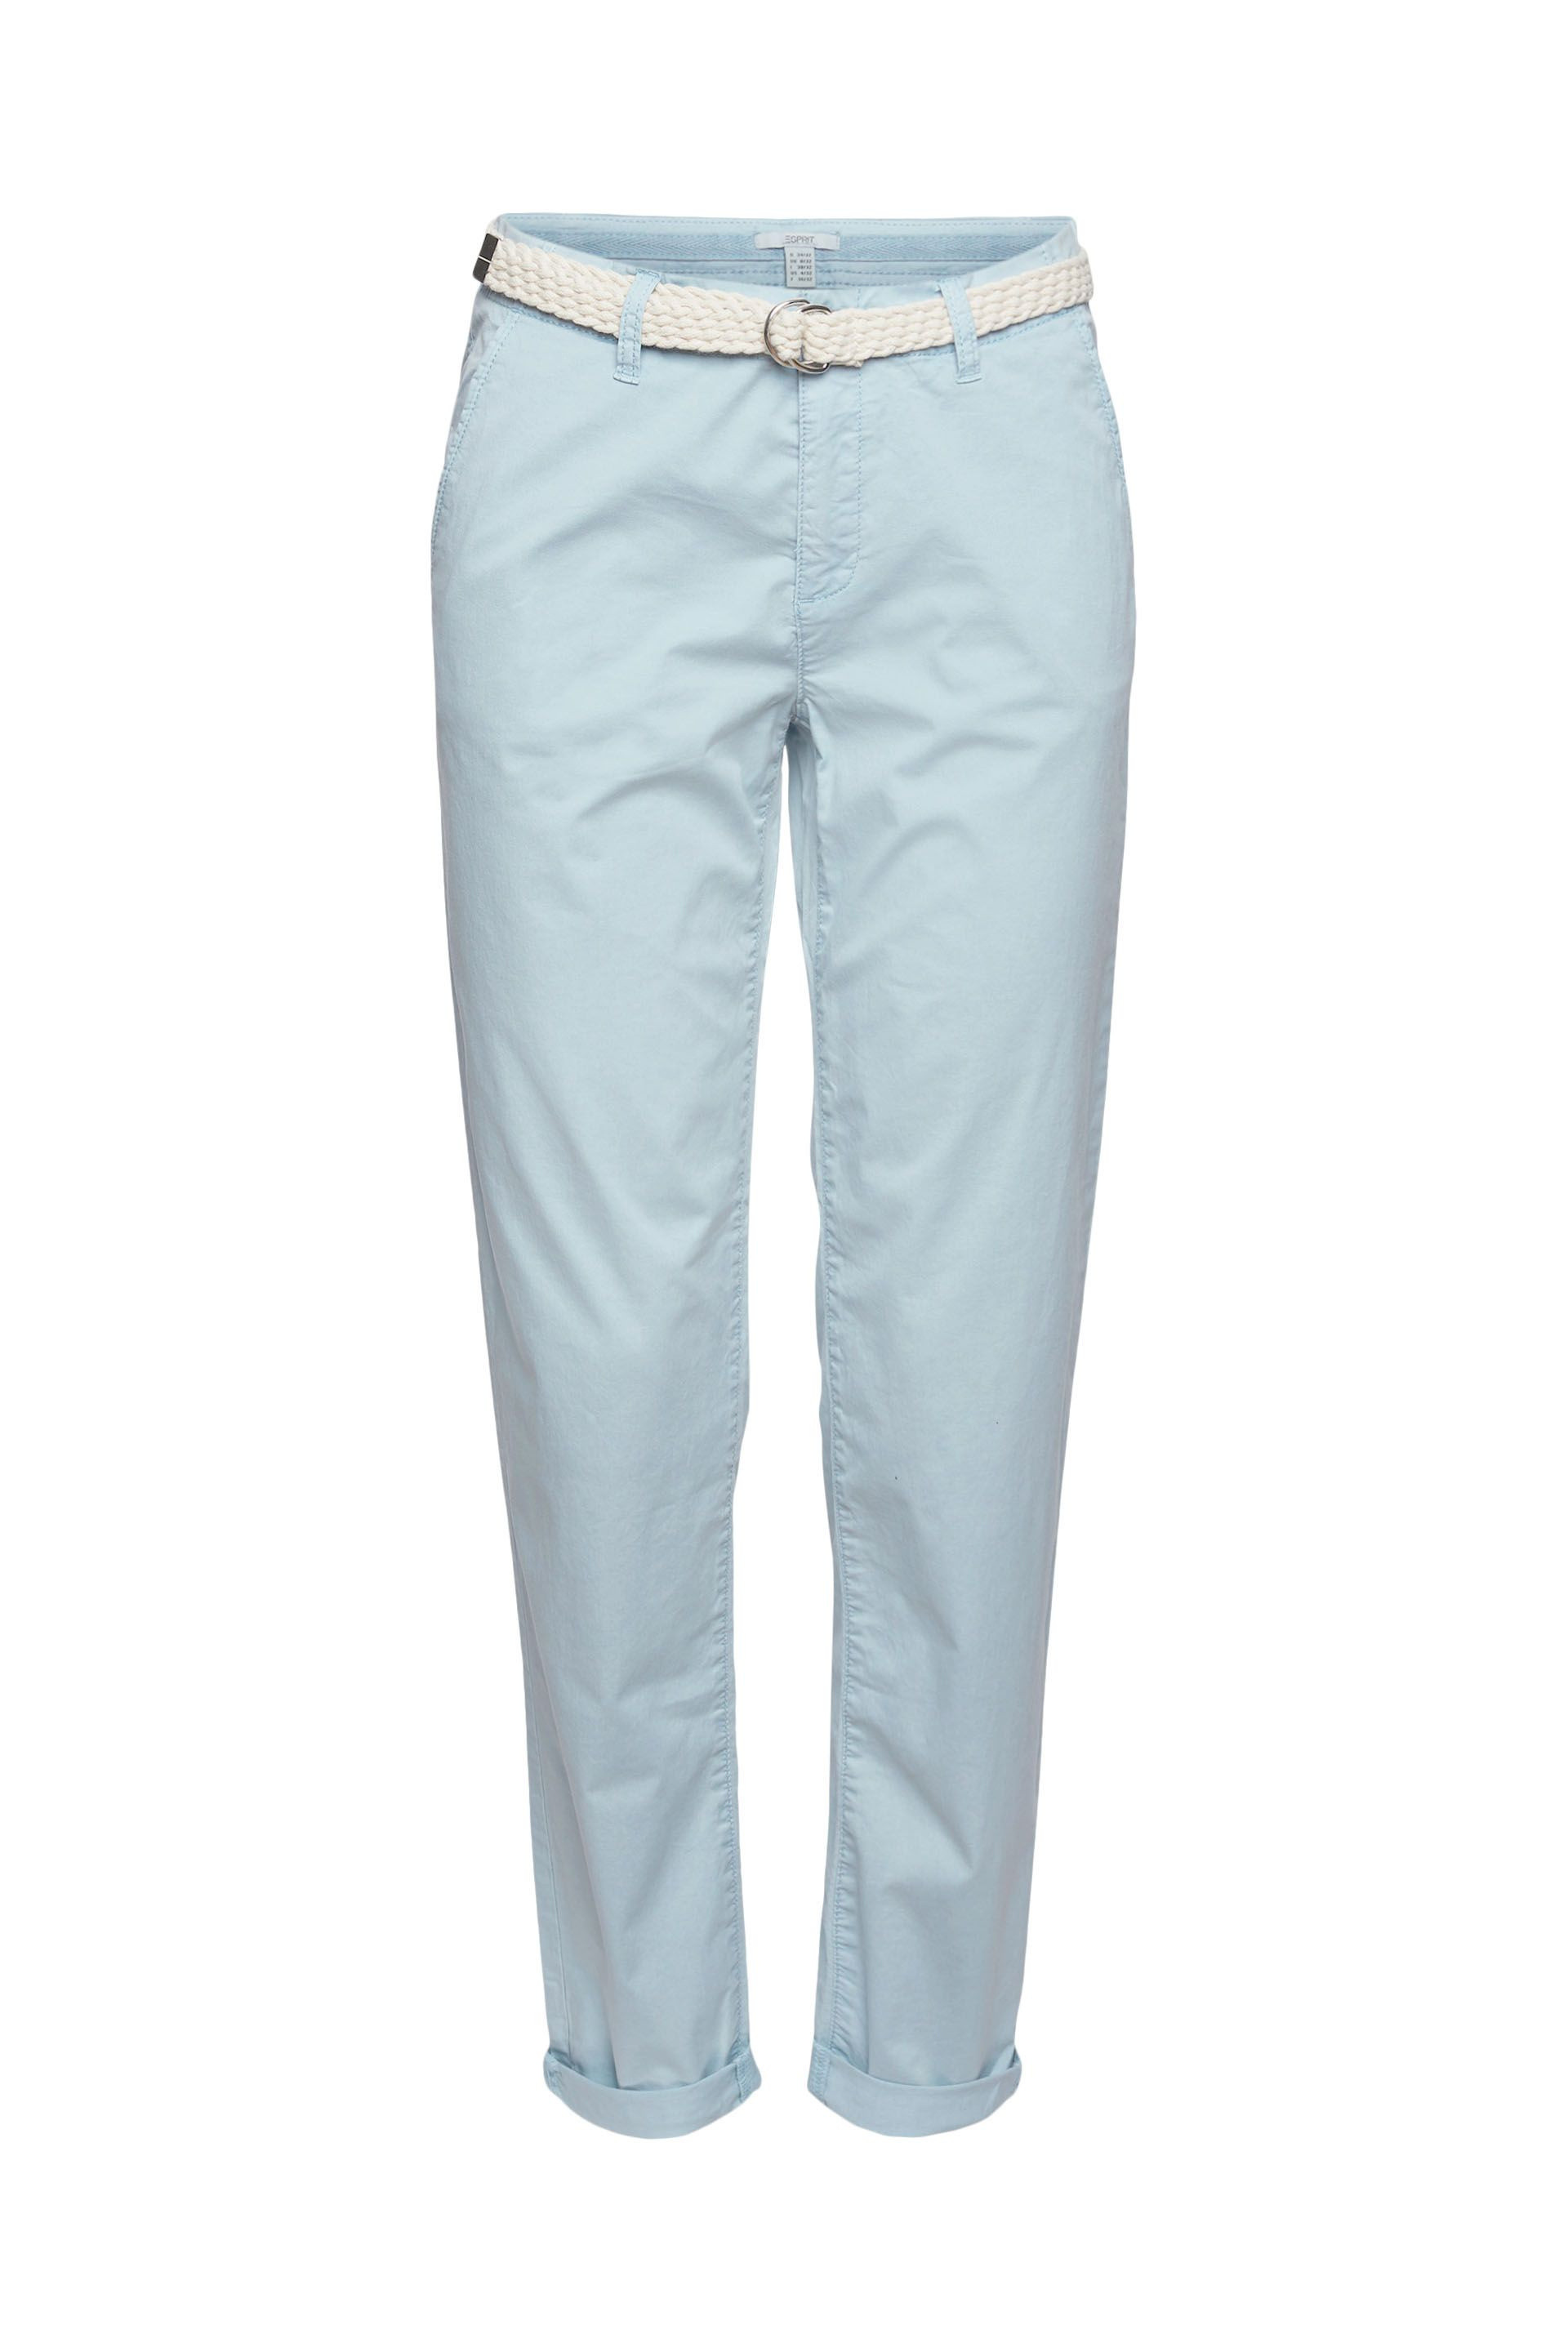 Pantaloni chino con cintura intrecciata, Azzurro celeste, large image number 0